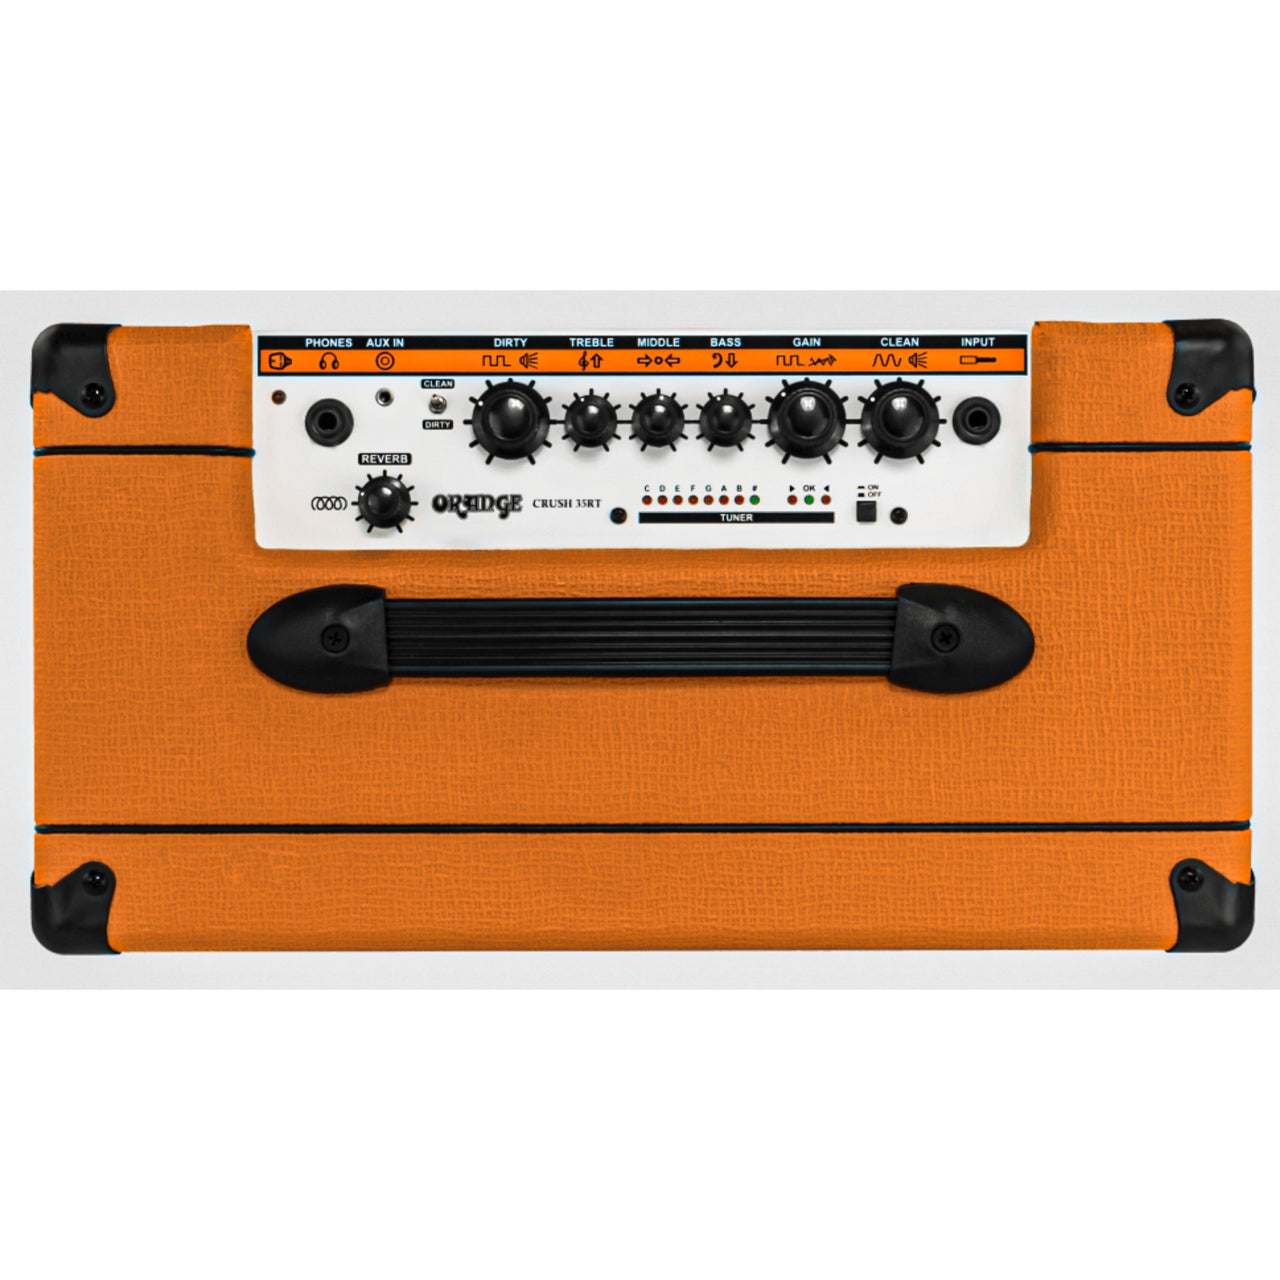 Amplificador Orange Crush 35rt Para Guitarra Crush 35w